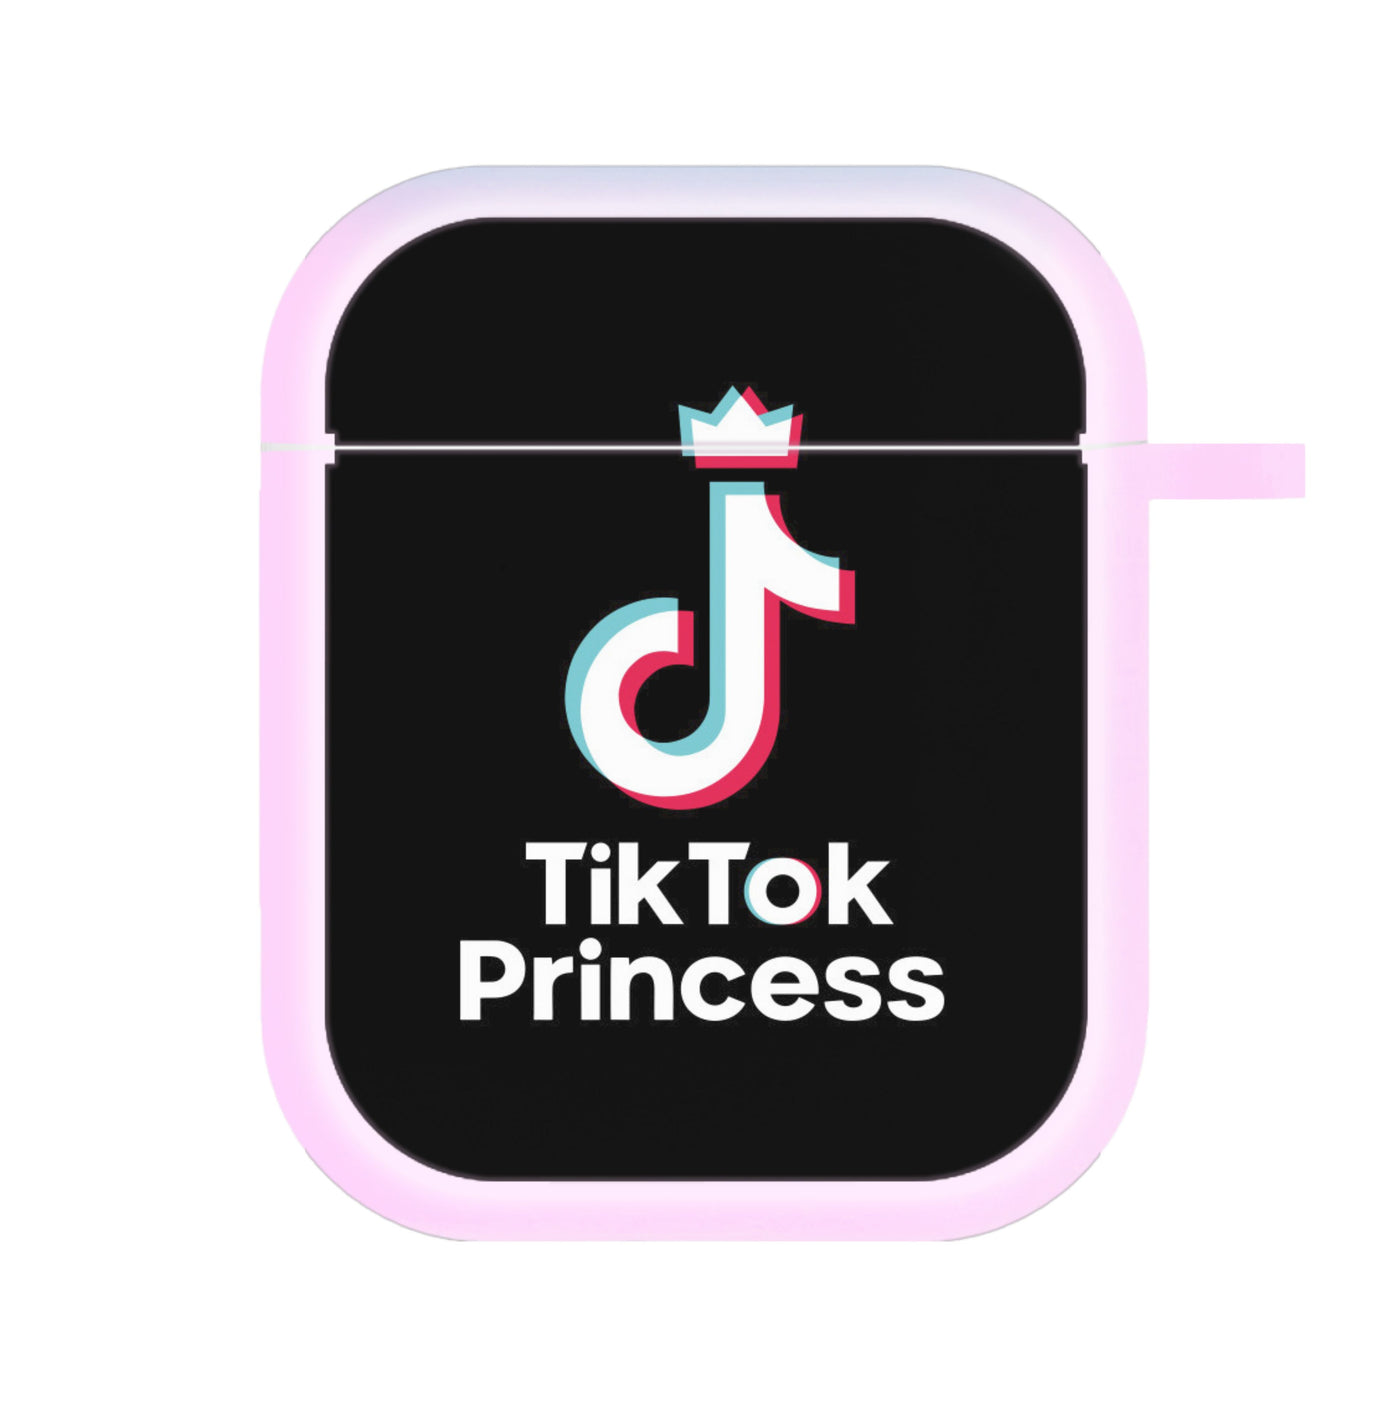 TikTok Princess AirPods Case